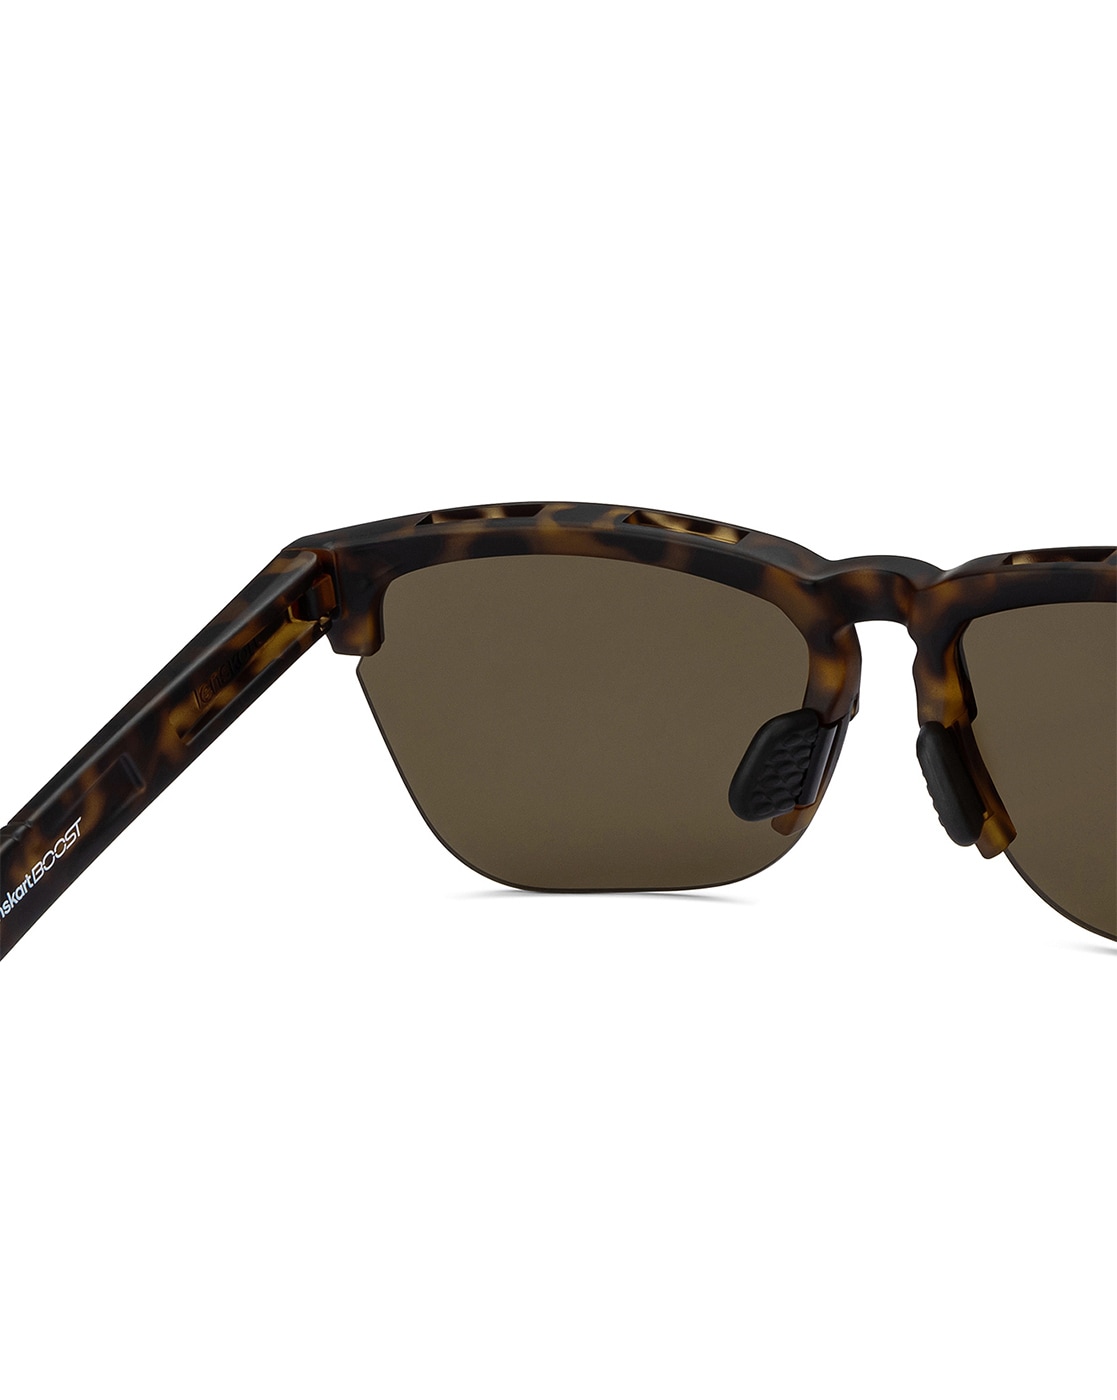 Black Wayfarer Full Rim Unisex Sunglasses by Lenskart Boost-206503